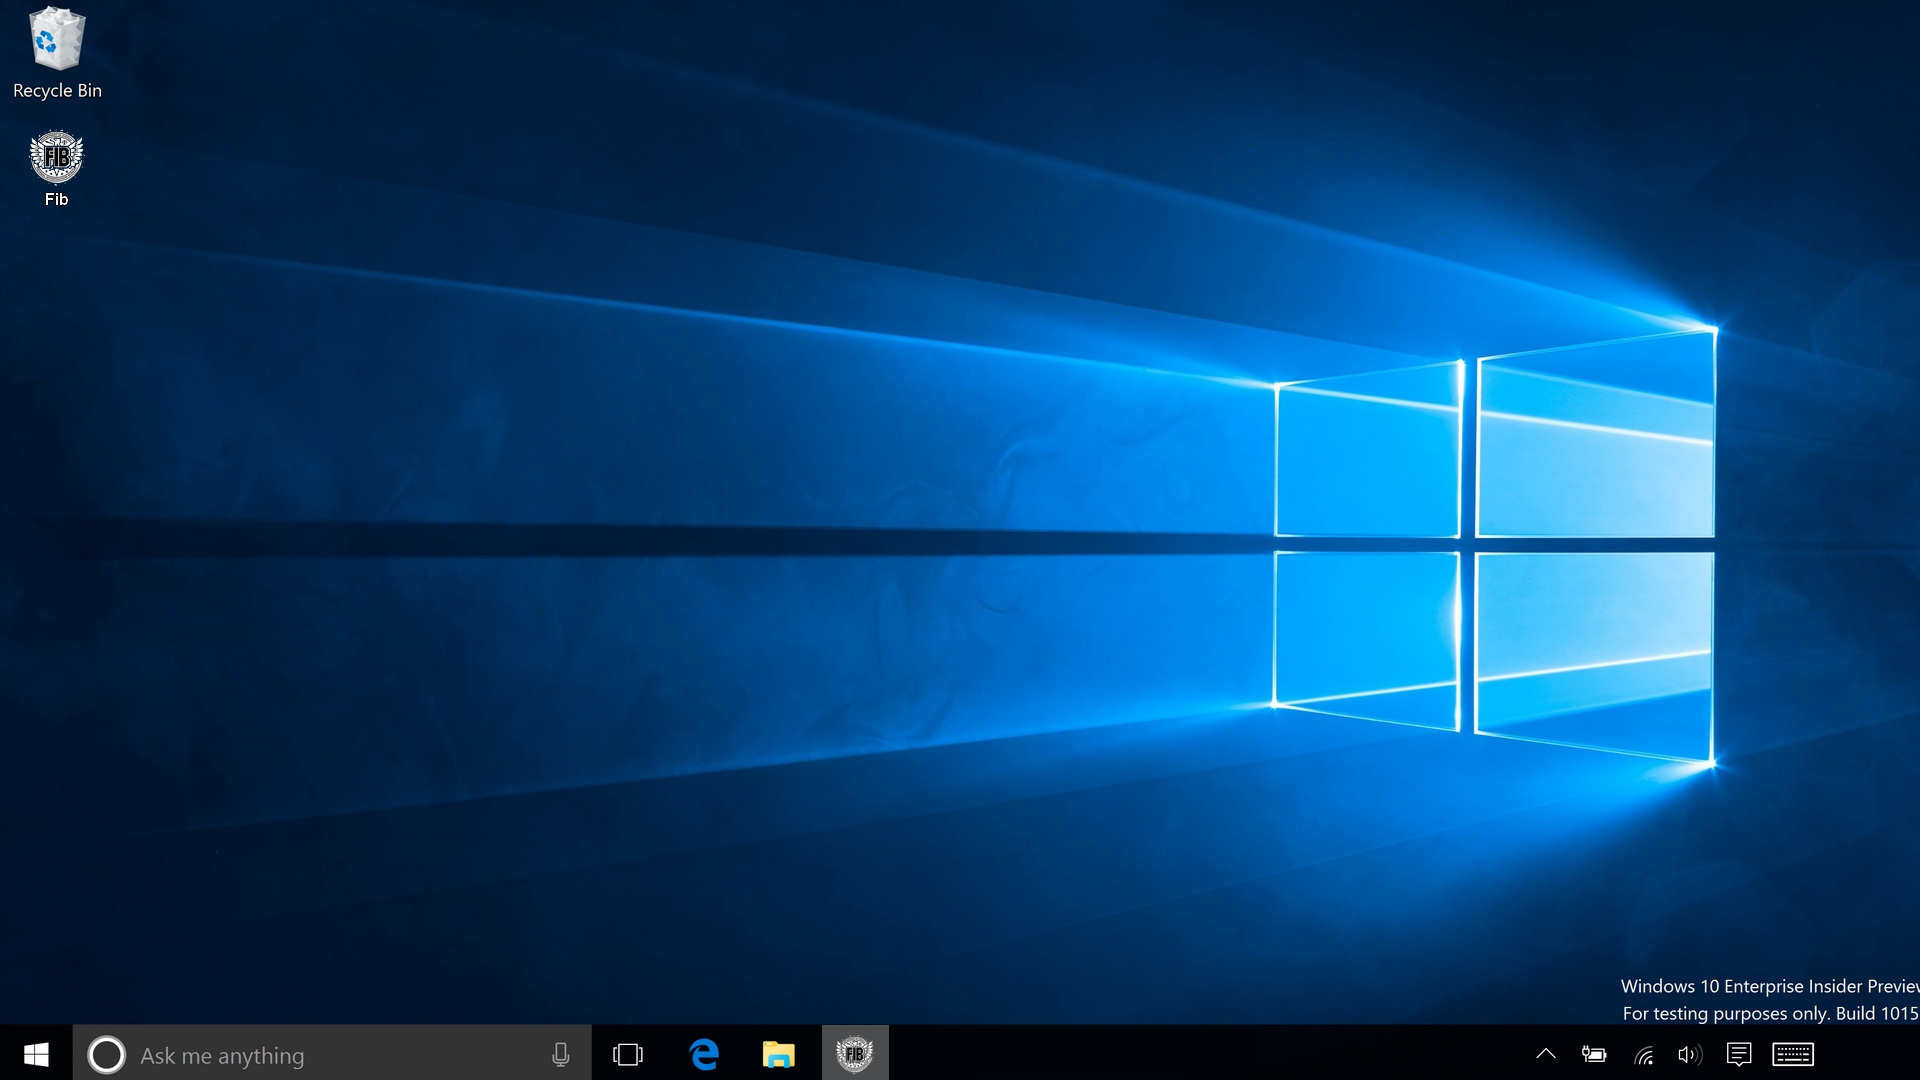 Hình nền máy tính Windows 10 GTA 5: Nếu bạn đang tìm kiếm một hình nền độc đáo và hấp dẫn với tựa game phổ biến GTA 5 thì đây là lựa chọn tuyệt vời cho bạn. Hình nền mang đến một không gian làm việc độc đáo và mang lại cho bạn cảm giác thoải mái, sáng tạo và đầy năng lượng. Hãy lựa chọn ngay hình nền Windows 10 GTA 5 phù hợp cho màn hình của bạn.